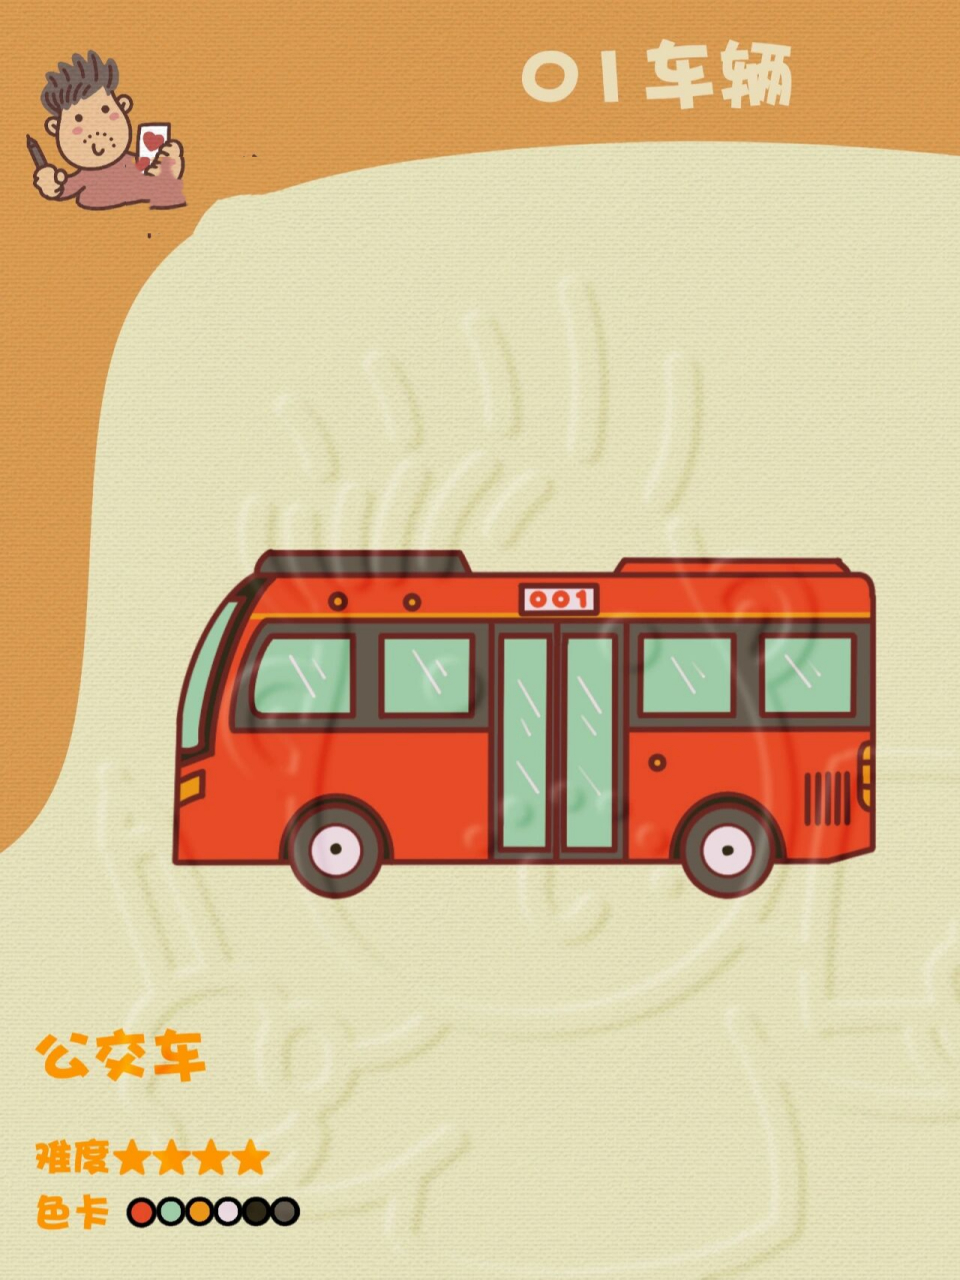 公交车简笔画卡通图片